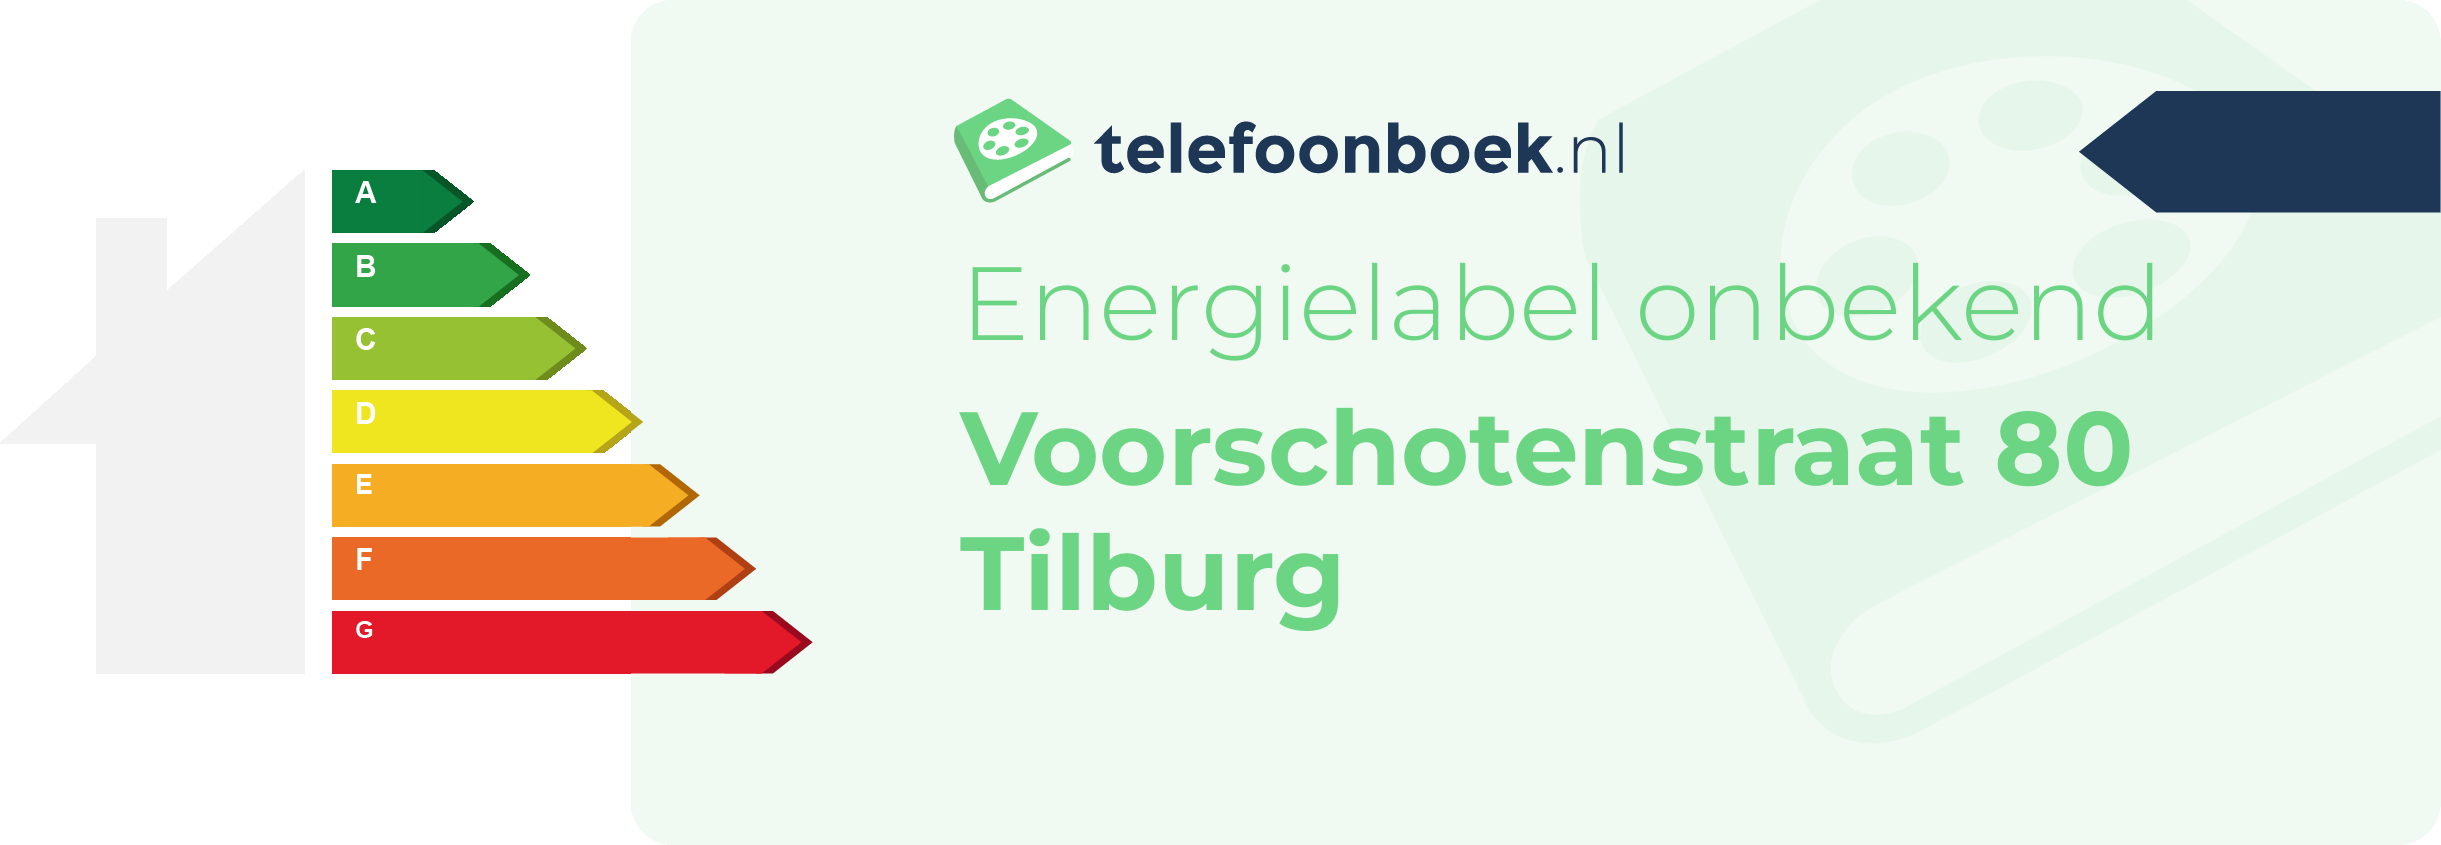 Energielabel Voorschotenstraat 80 Tilburg